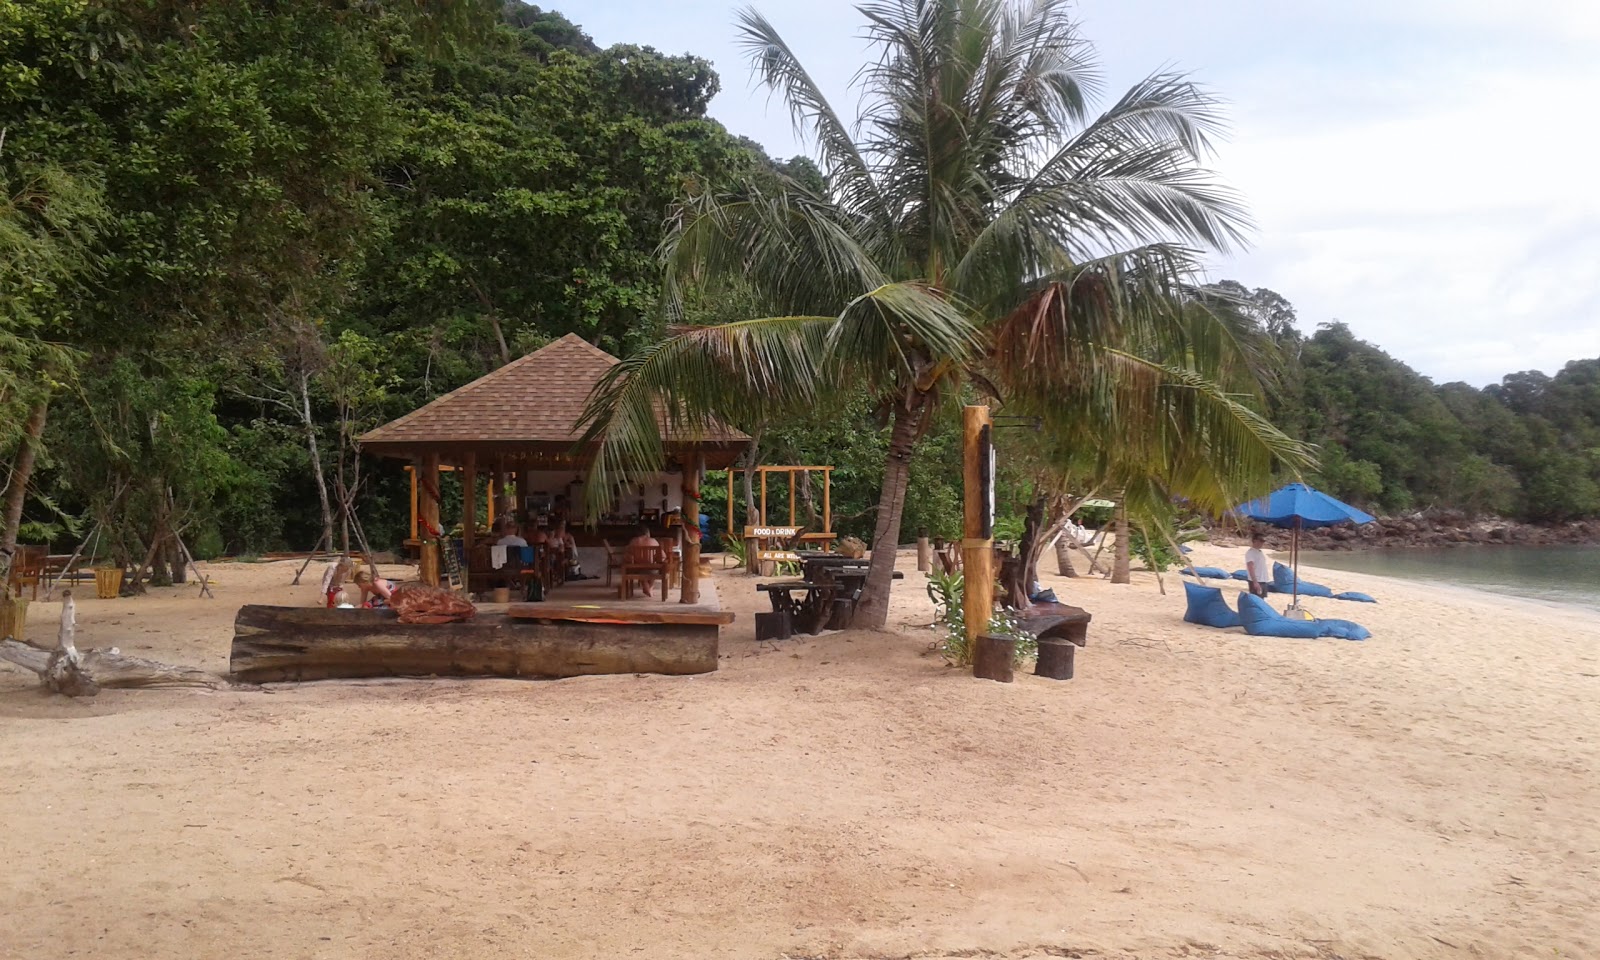 Foto af Koh Ngai Paradise Beach - populært sted blandt afslapningskendere